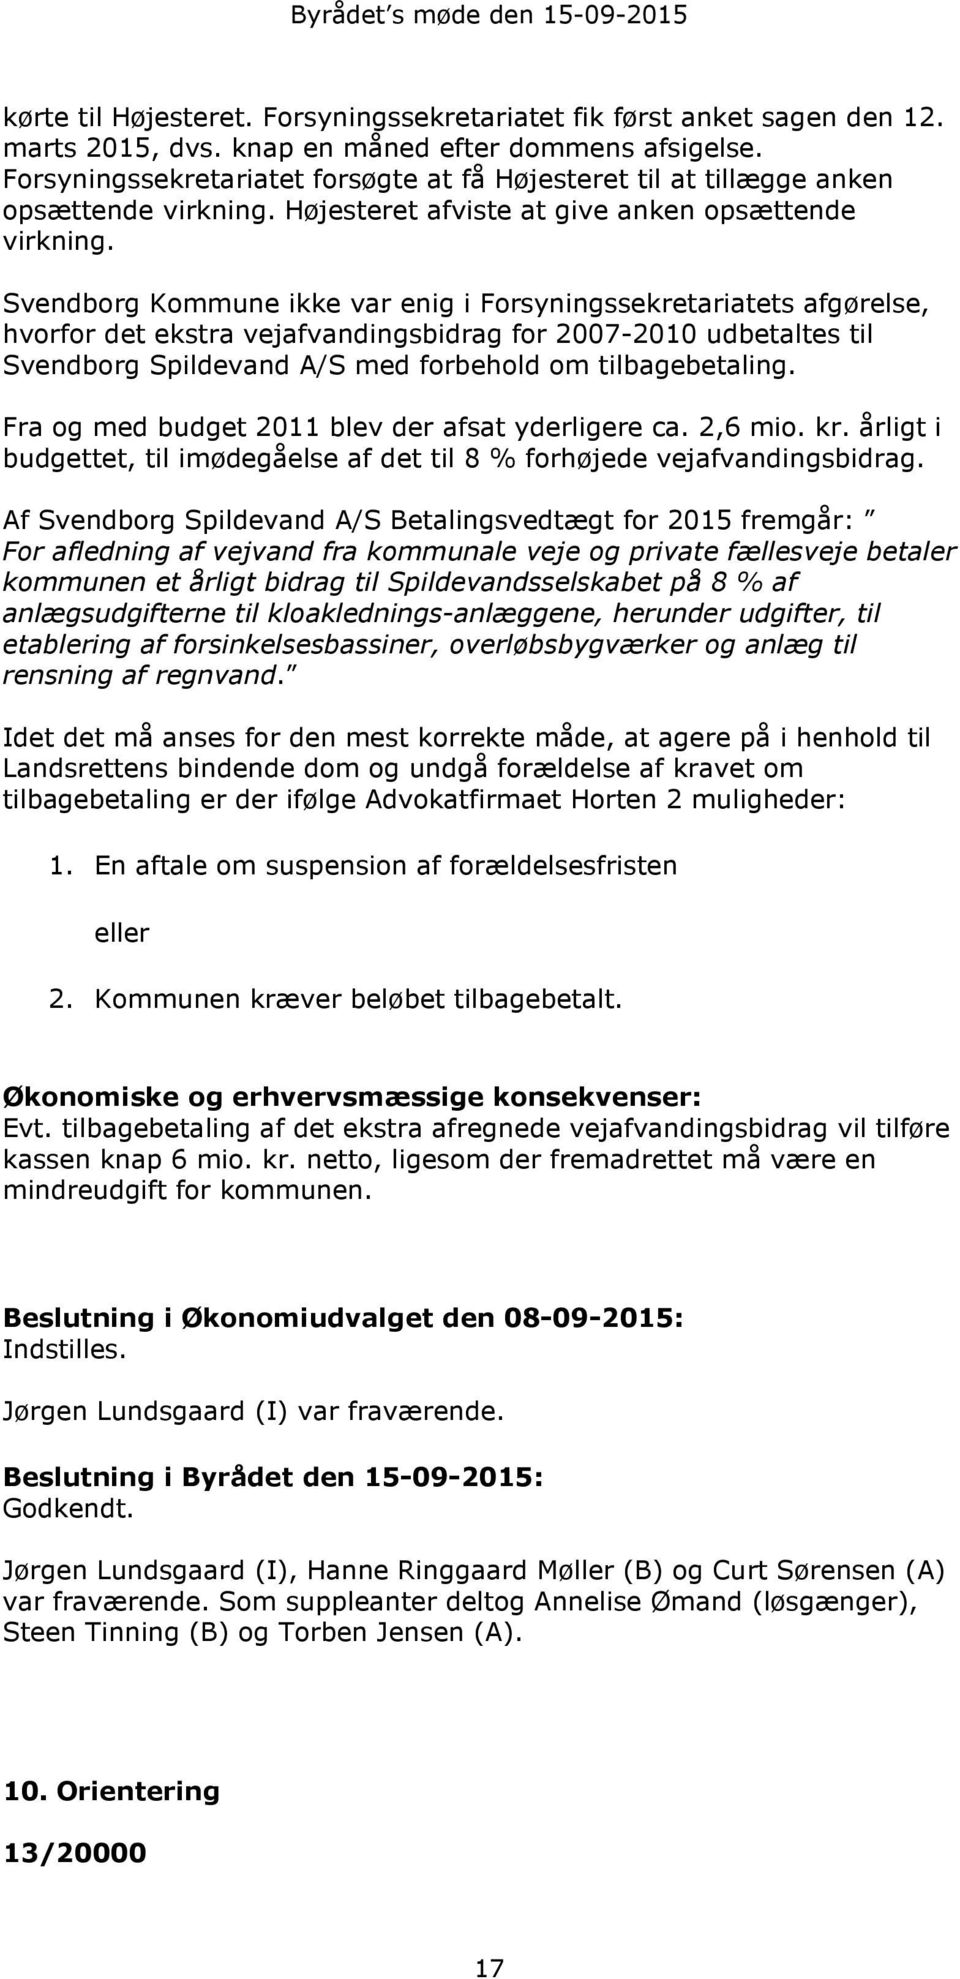 Svendborg Kommune ikke var enig i Forsyningssekretariatets afgørelse, hvorfor det ekstra vejafvandingsbidrag for 2007-2010 udbetaltes til Svendborg Spildevand A/S med forbehold om tilbagebetaling.